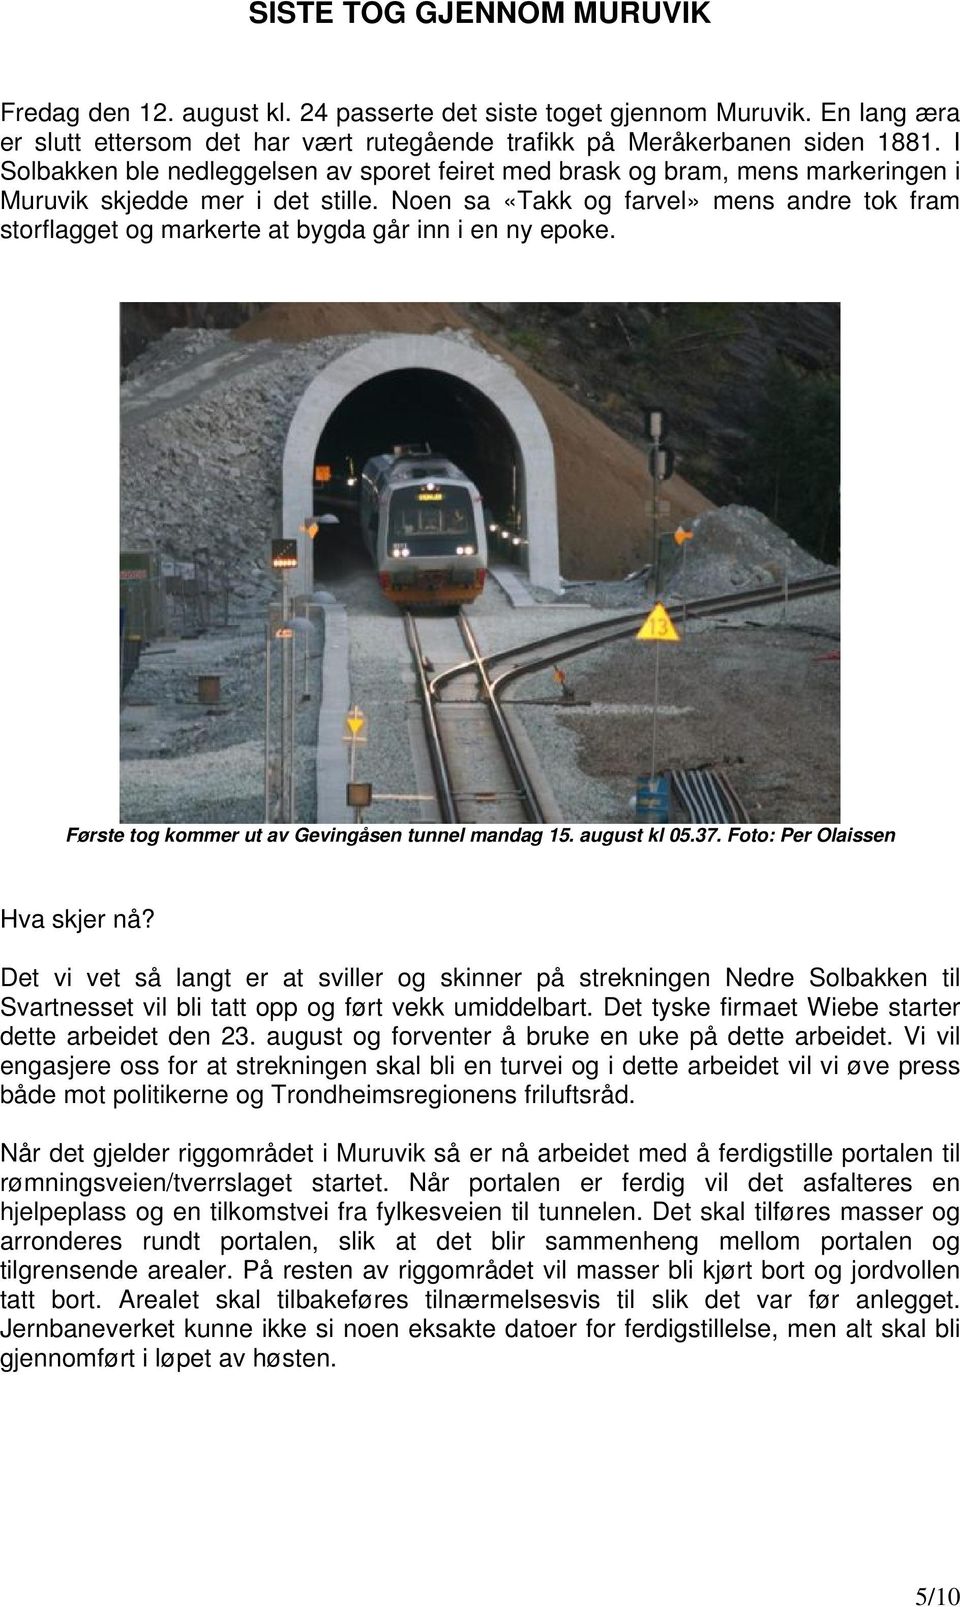 Noen sa «Takk og farvel» mens andre tok fram storflagget og markerte at bygda går inn i en ny epoke. Første tog kommer ut av Gevingåsen tunnel mandag 15. august kl 05.37.